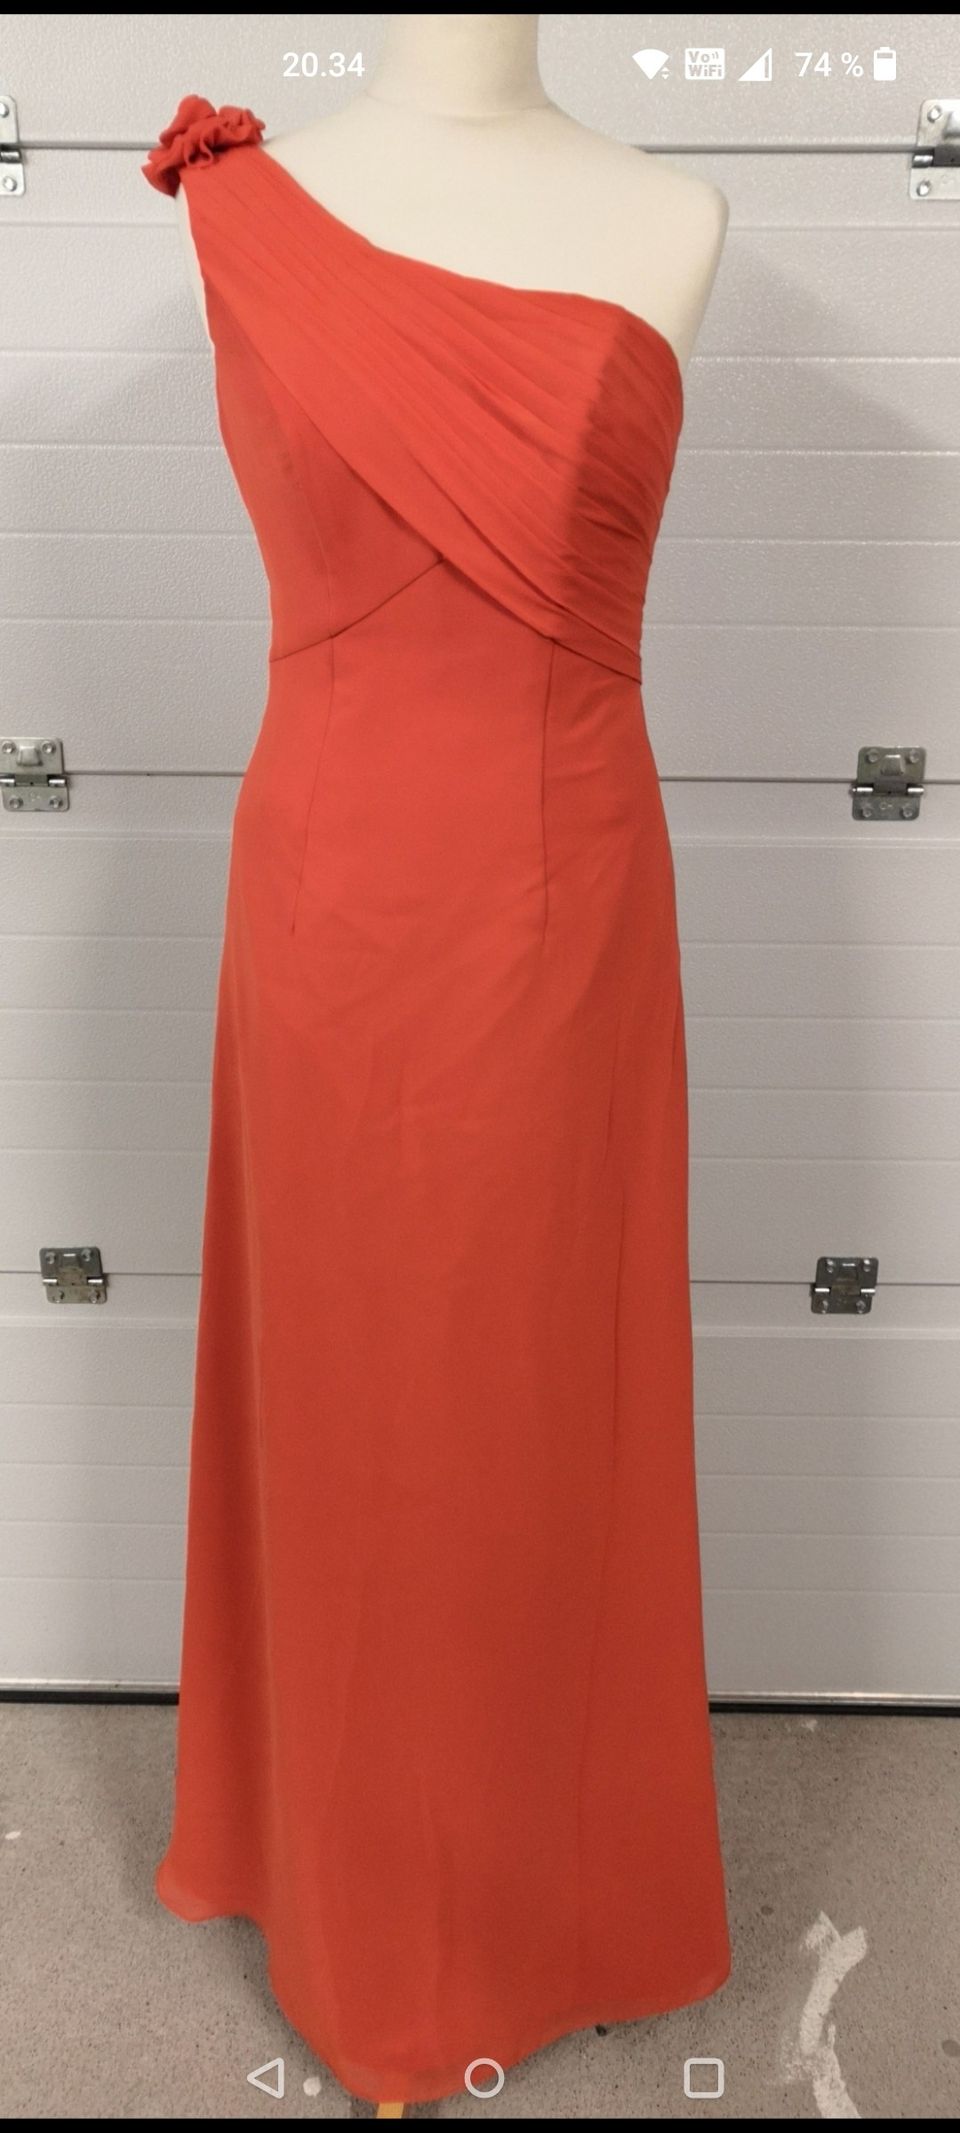 Uusi oranssi mekko koko 36